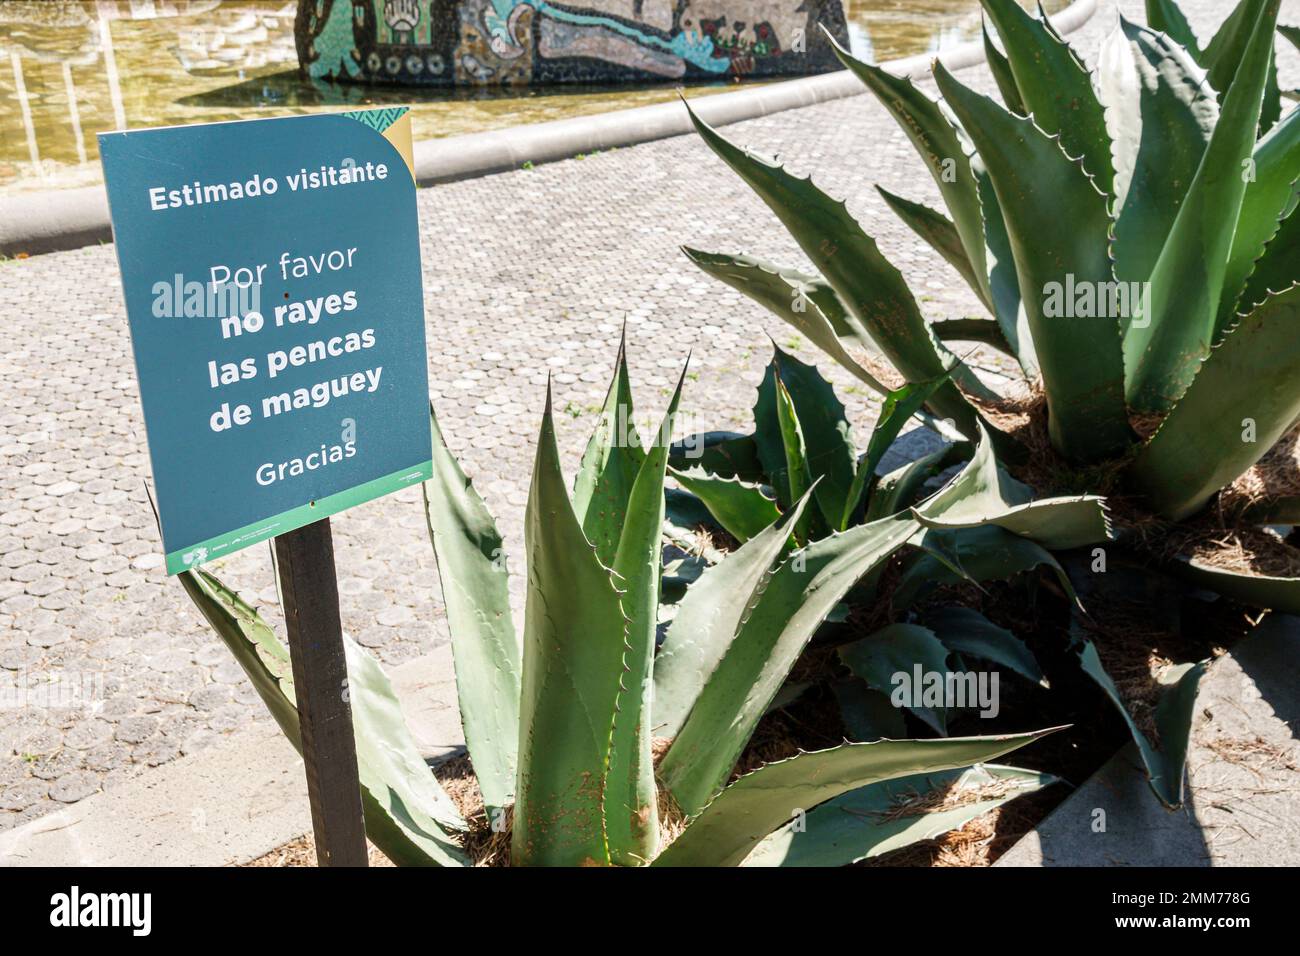 Mexiko-Stadt, Bosque de Chapultepec Abschnitt 2 Wald, Maguey Agave Pflanzen Pflanzenschutz kein Kratzer Blätter, Schilder Informationen Stockfoto